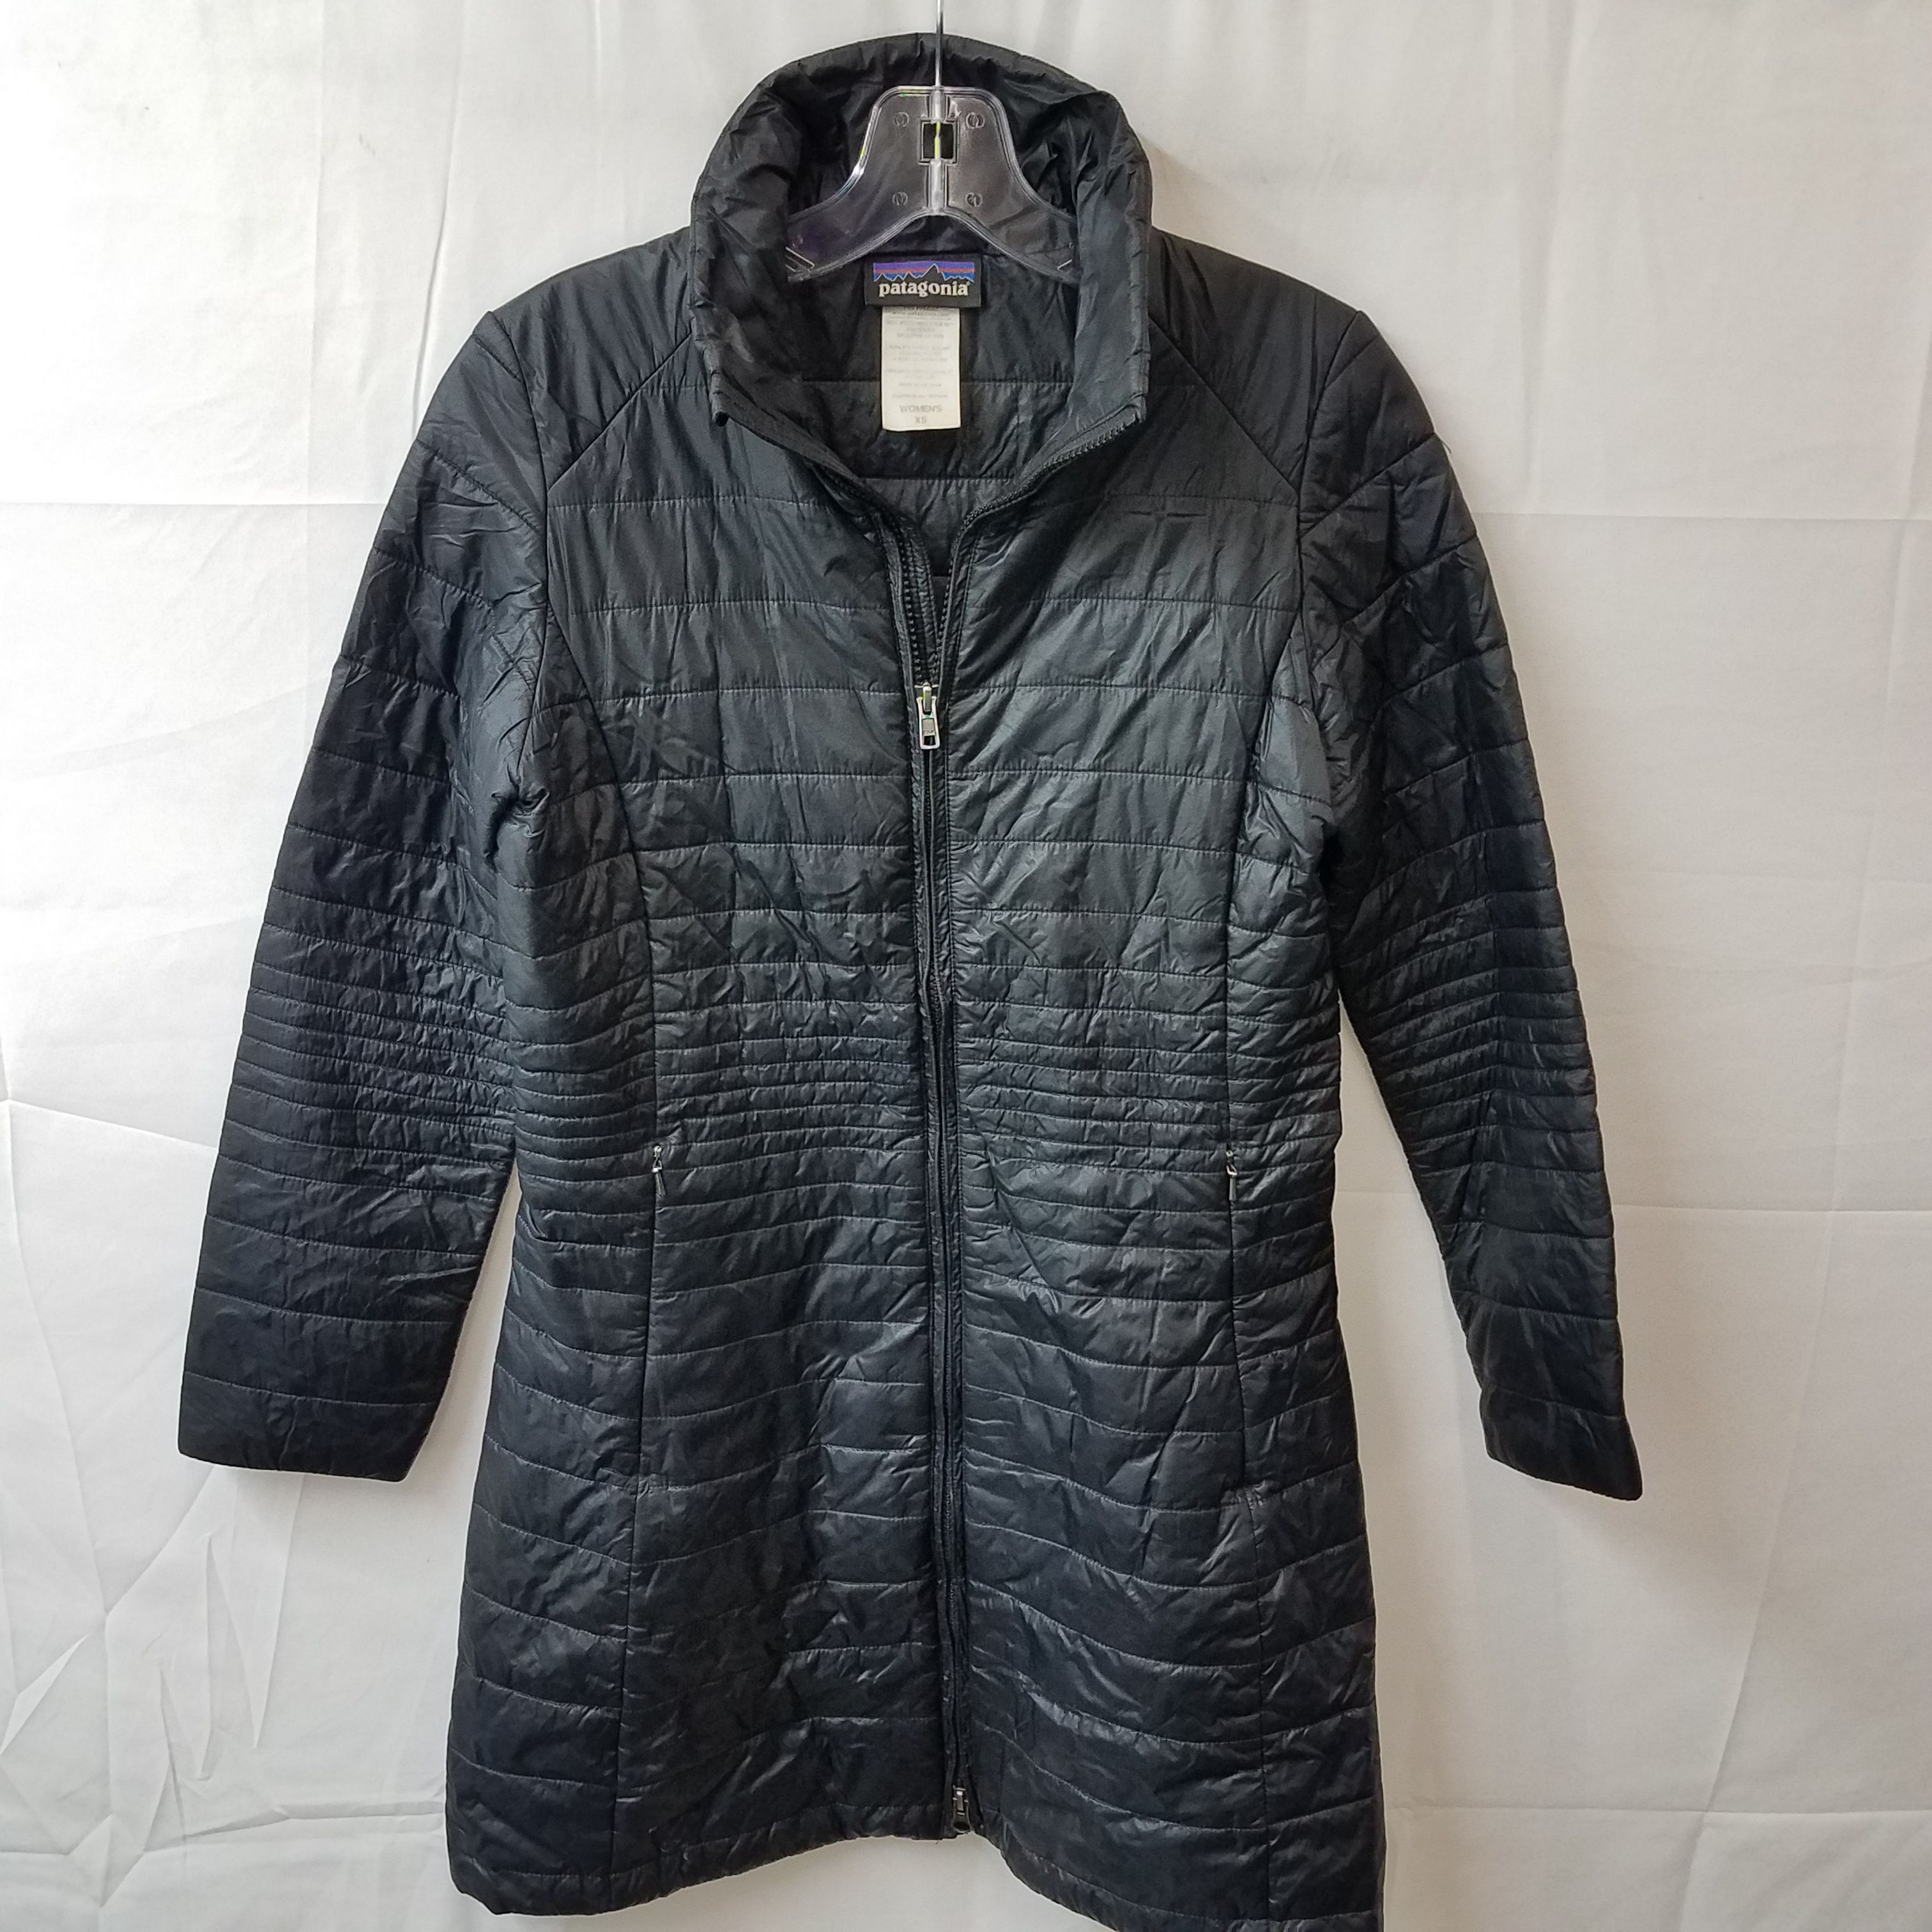 Buy the Patagonia Long Sleeve Black Full Zip Outdoor Coat Jacket